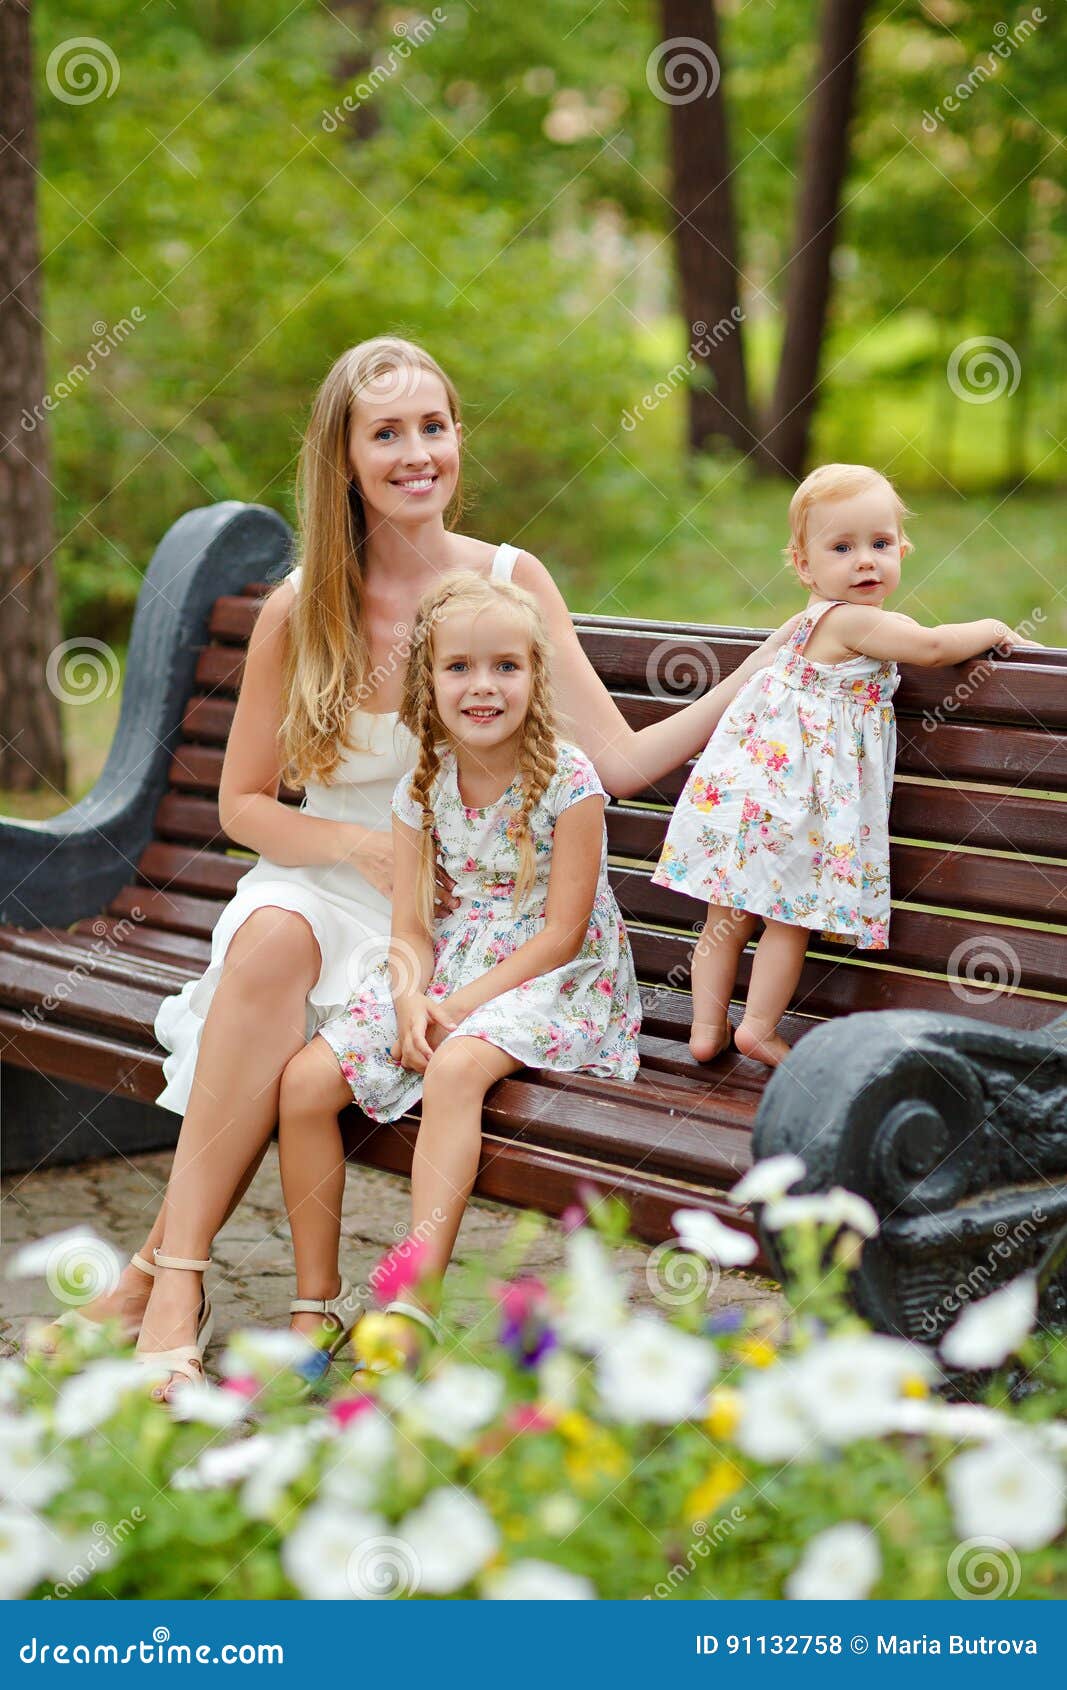 Blonde daughter. Мама с дочкой на лавочке. Фотосессия мама с дочкой на лавочке. Фотосессия в парке мама с дочками на лавочке. Фотосессия мать и дочь на скамейке.